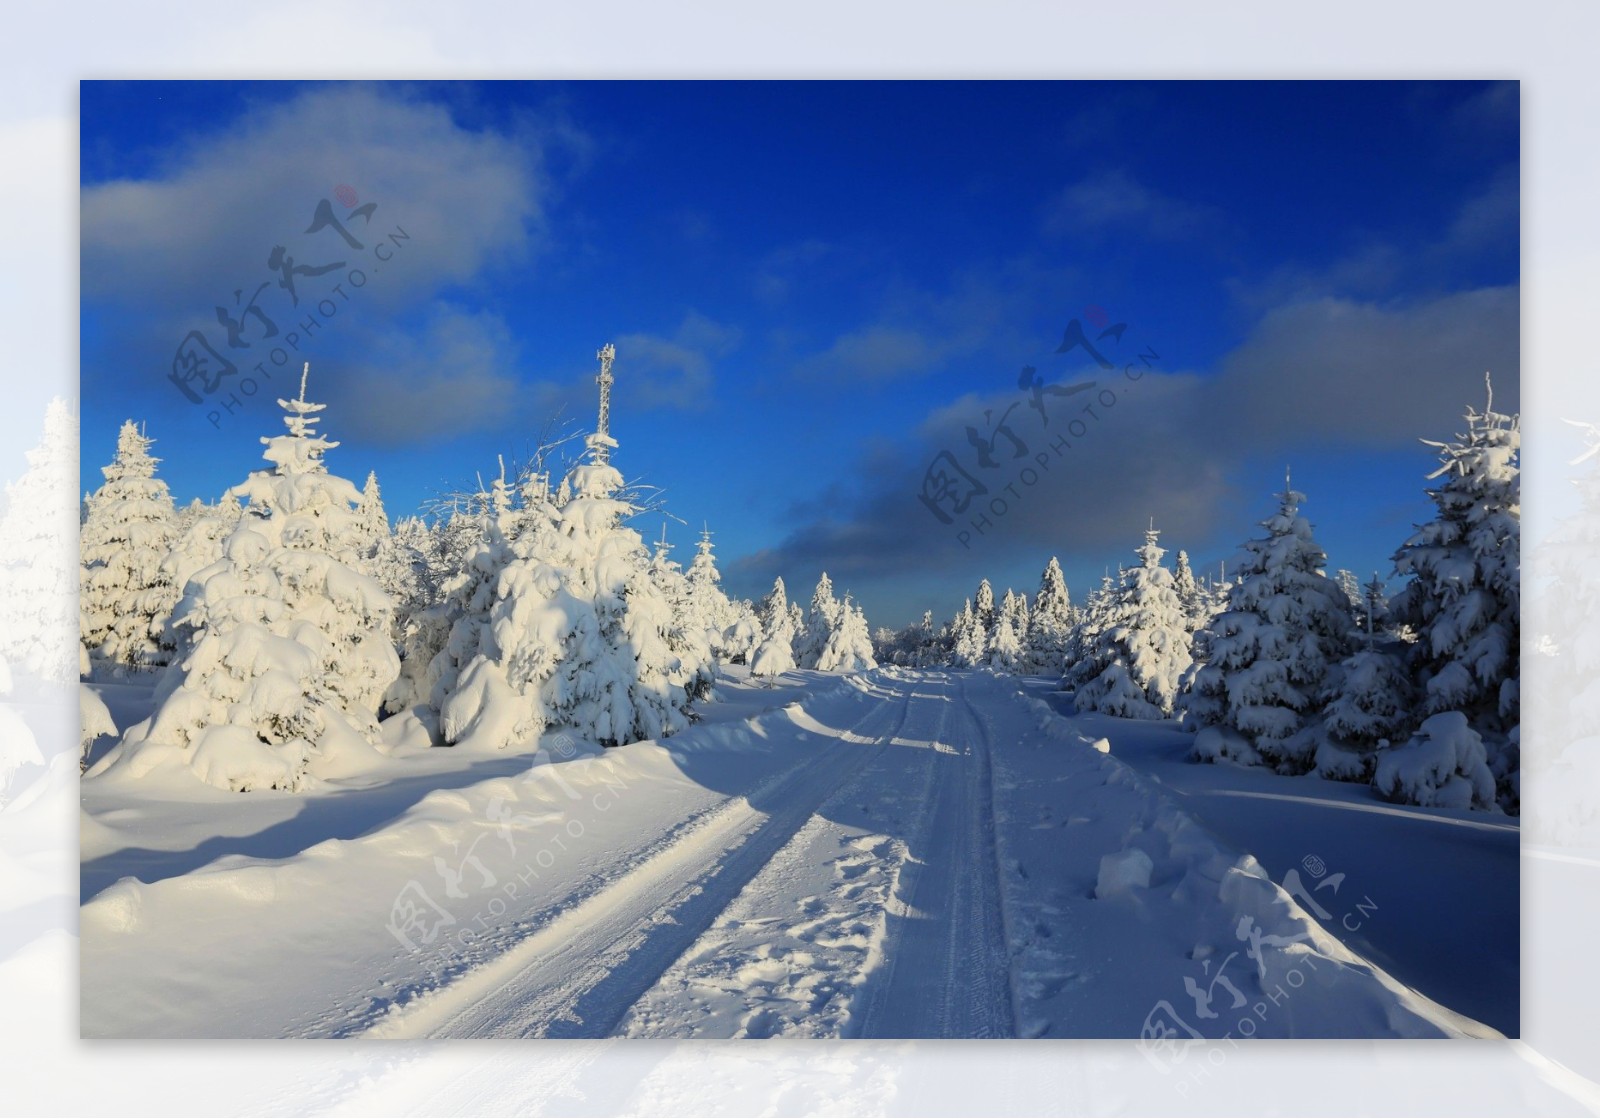 唯美冬季积雪风景图片